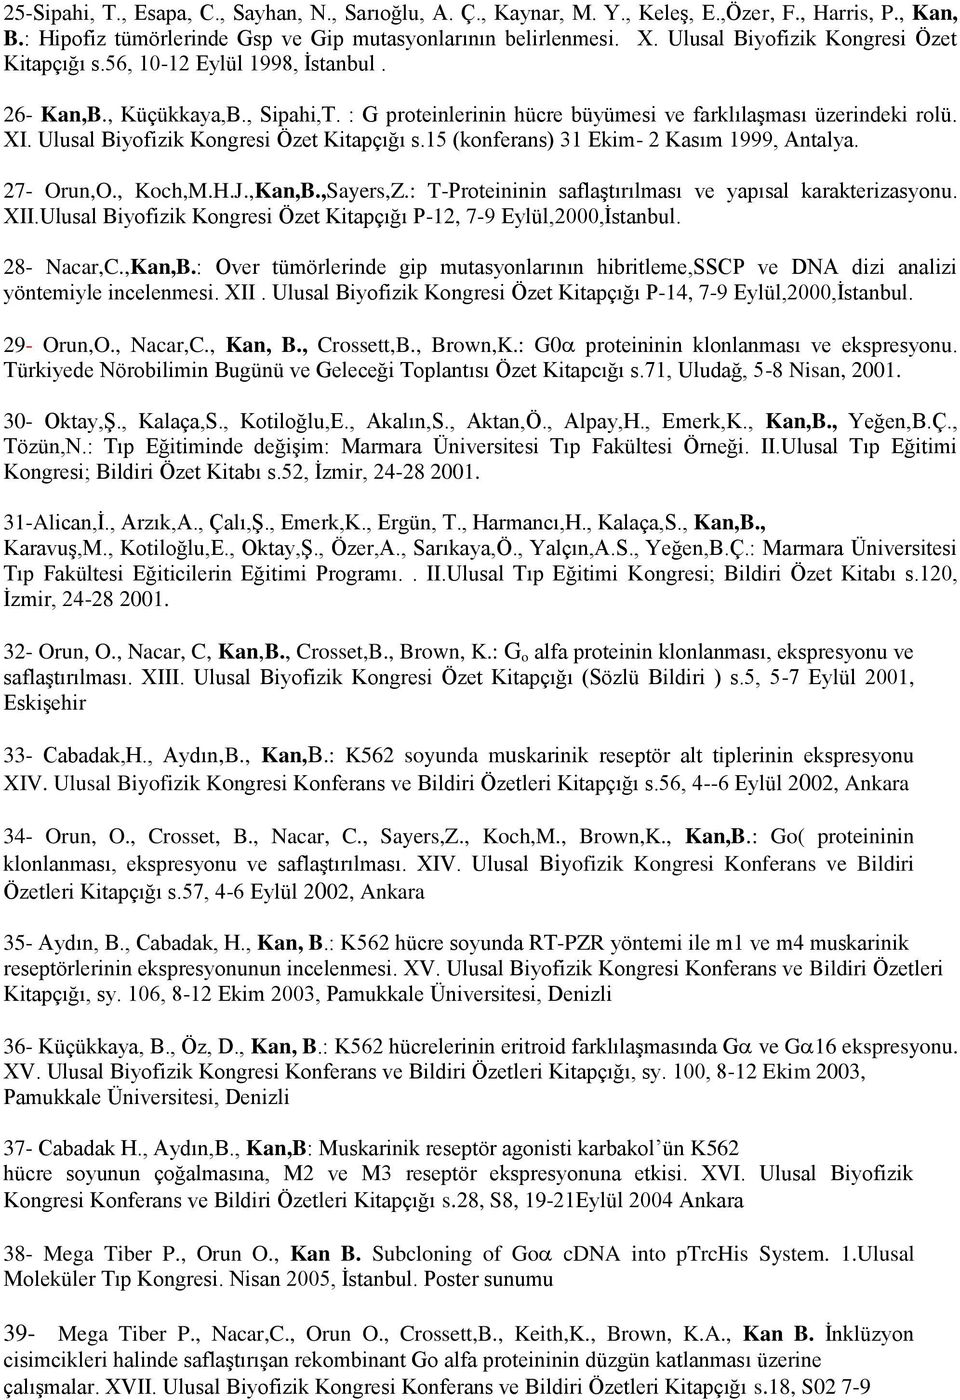 Ulusal Biyofizik Kongresi Özet Kitapçığı s.15 (konferans) 31 Ekim- 2 Kasım 1999, Antalya. 27- Orun,O., Koch,M.H.J.,Kan,B.,Sayers,Z.: T-Proteininin saflaştırılması ve yapısal karakterizasyonu. XII.